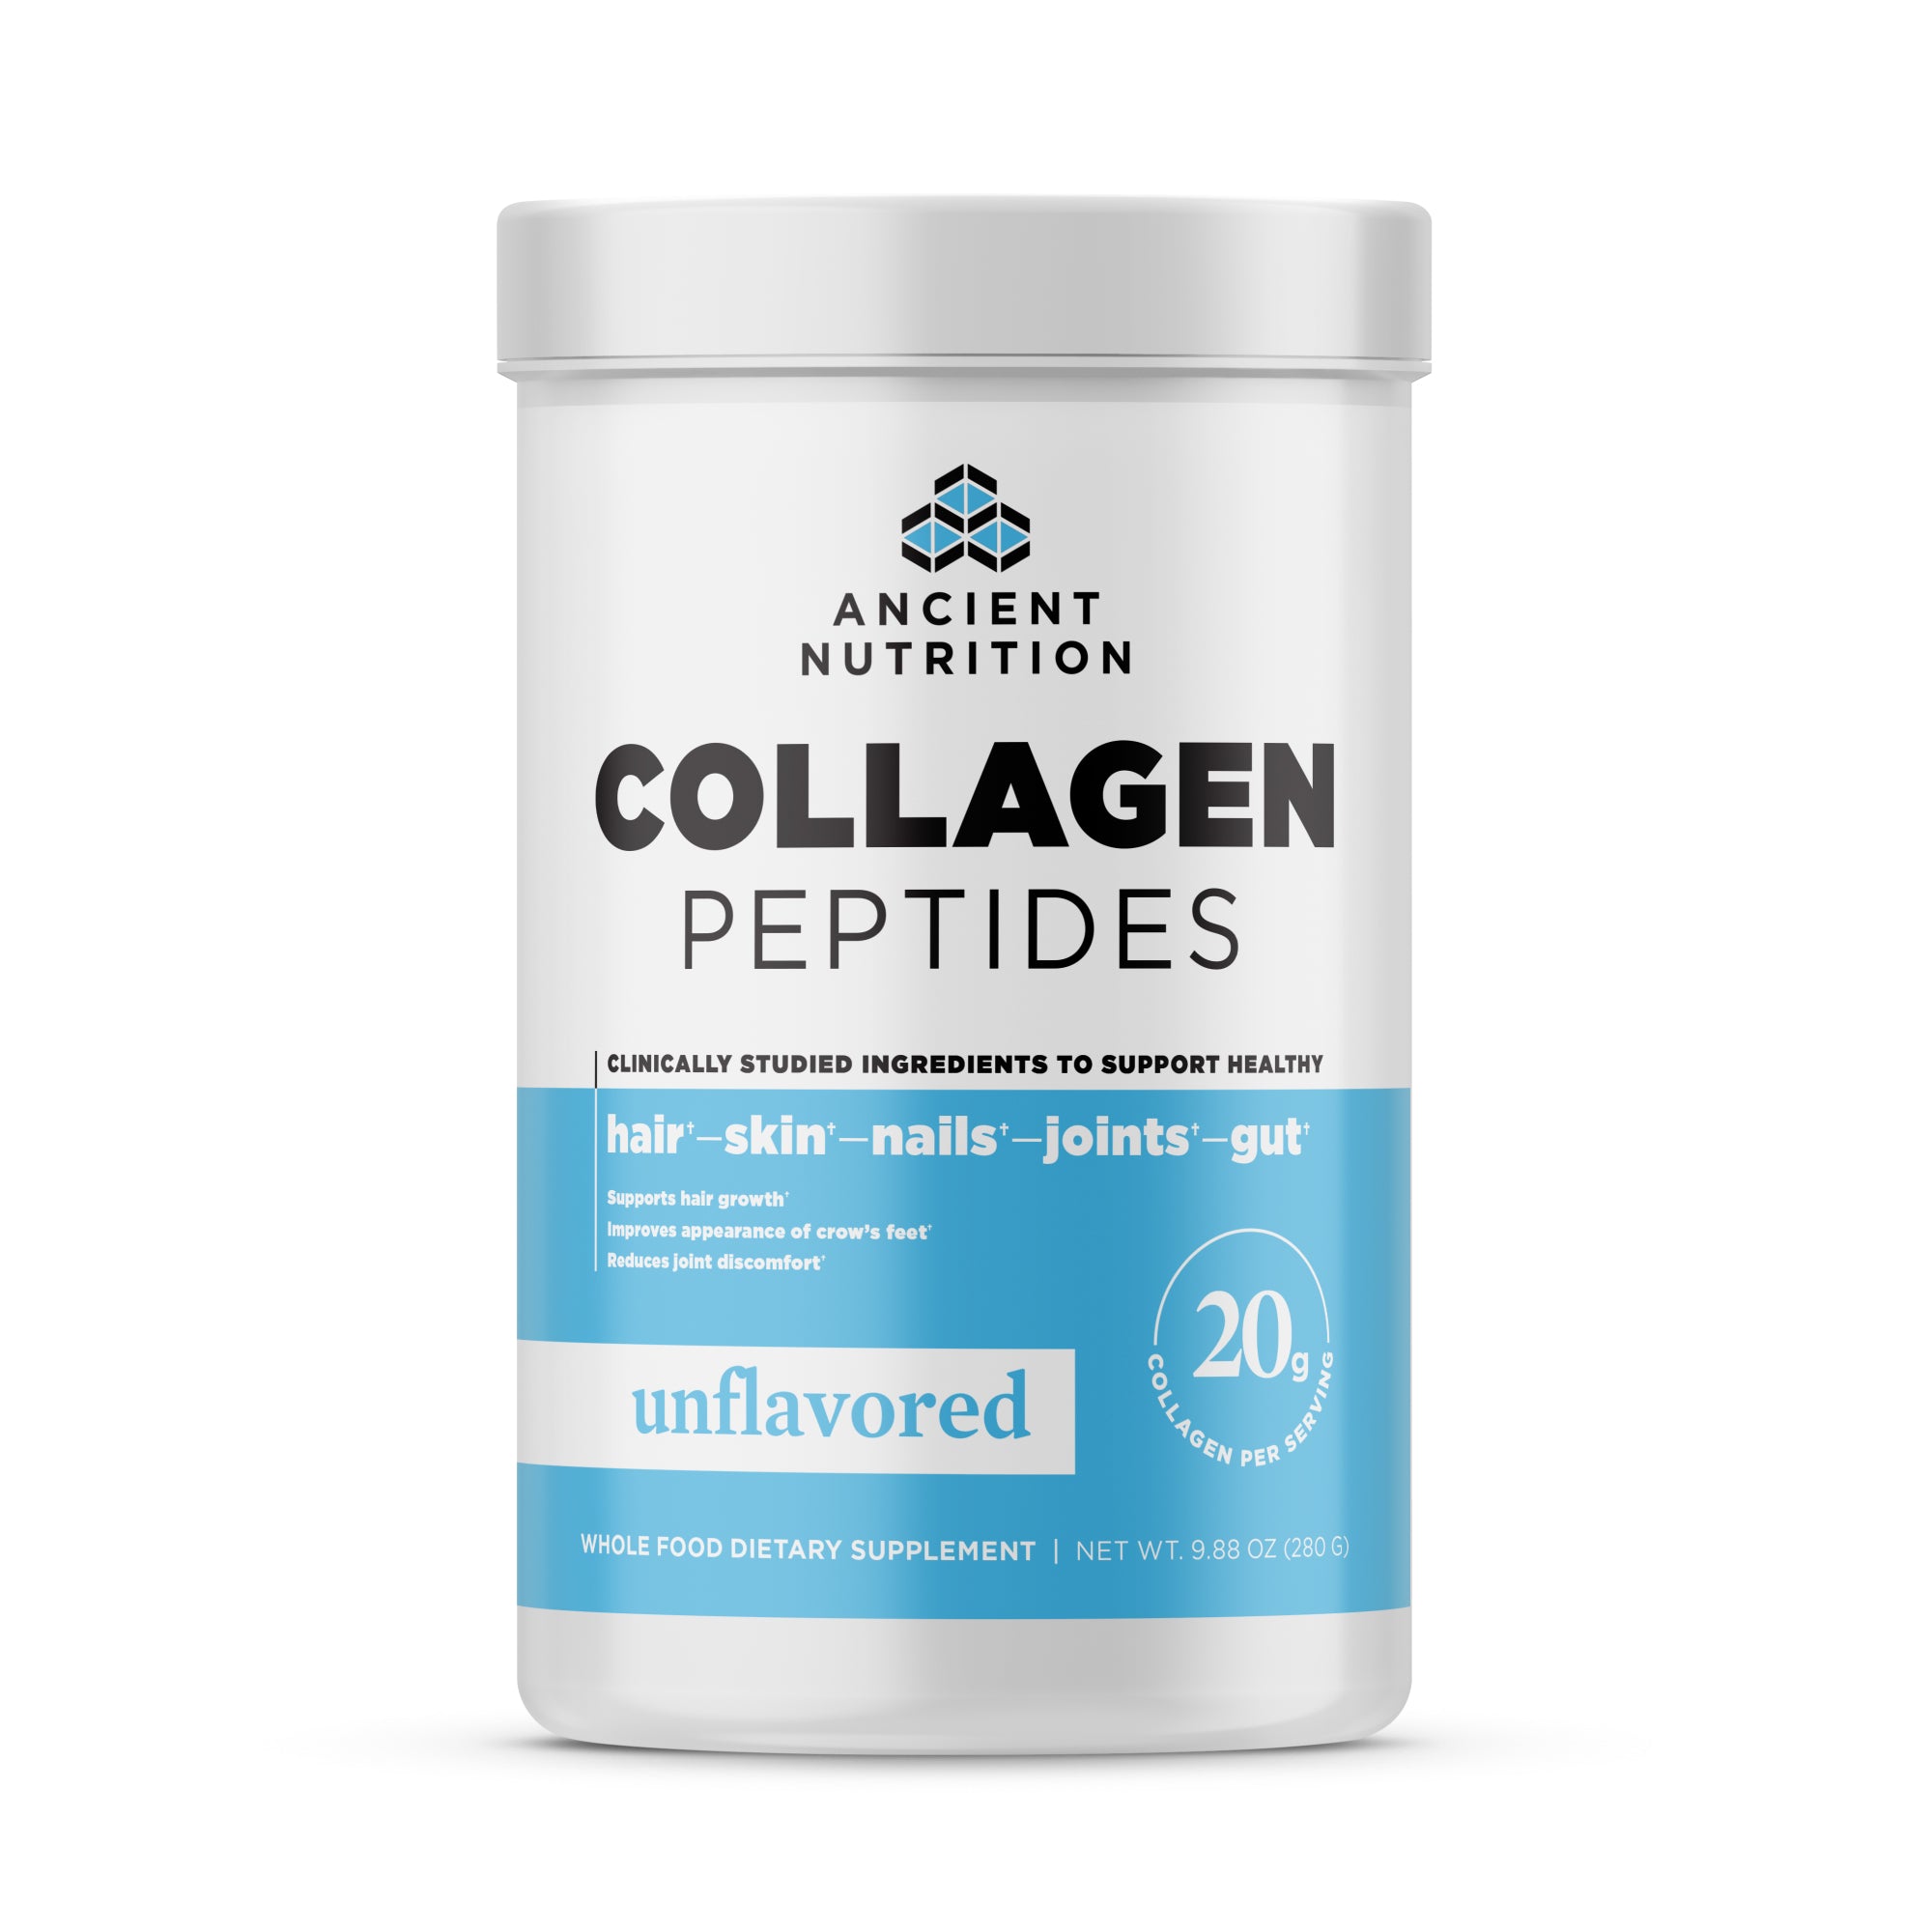 Collagen Peptides Powder